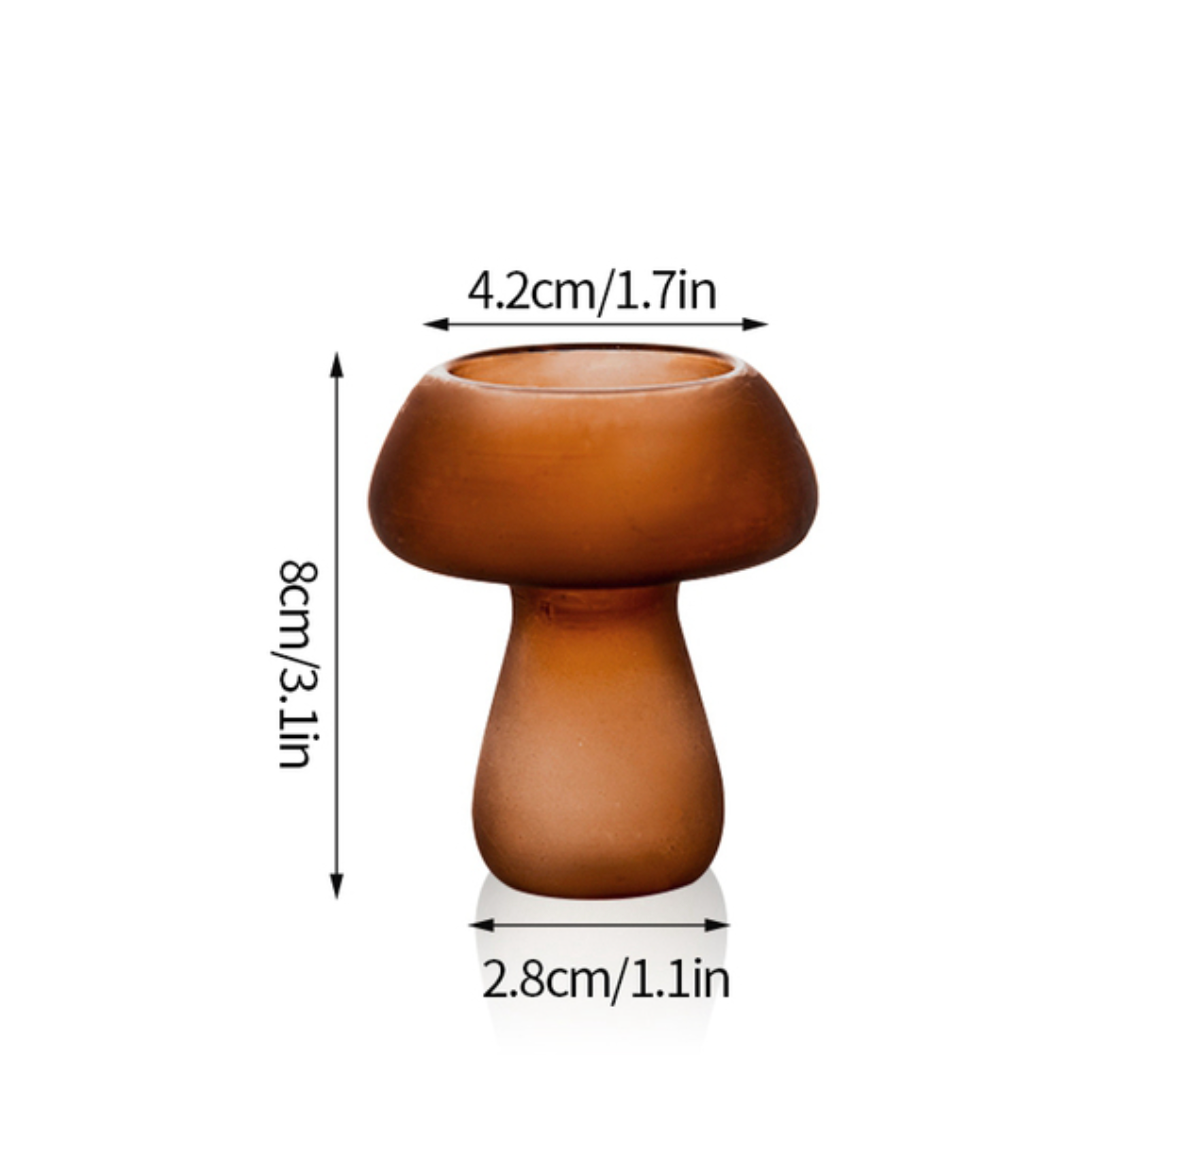 Dual Purpose Mushroom Shape Candle Holders / Vases